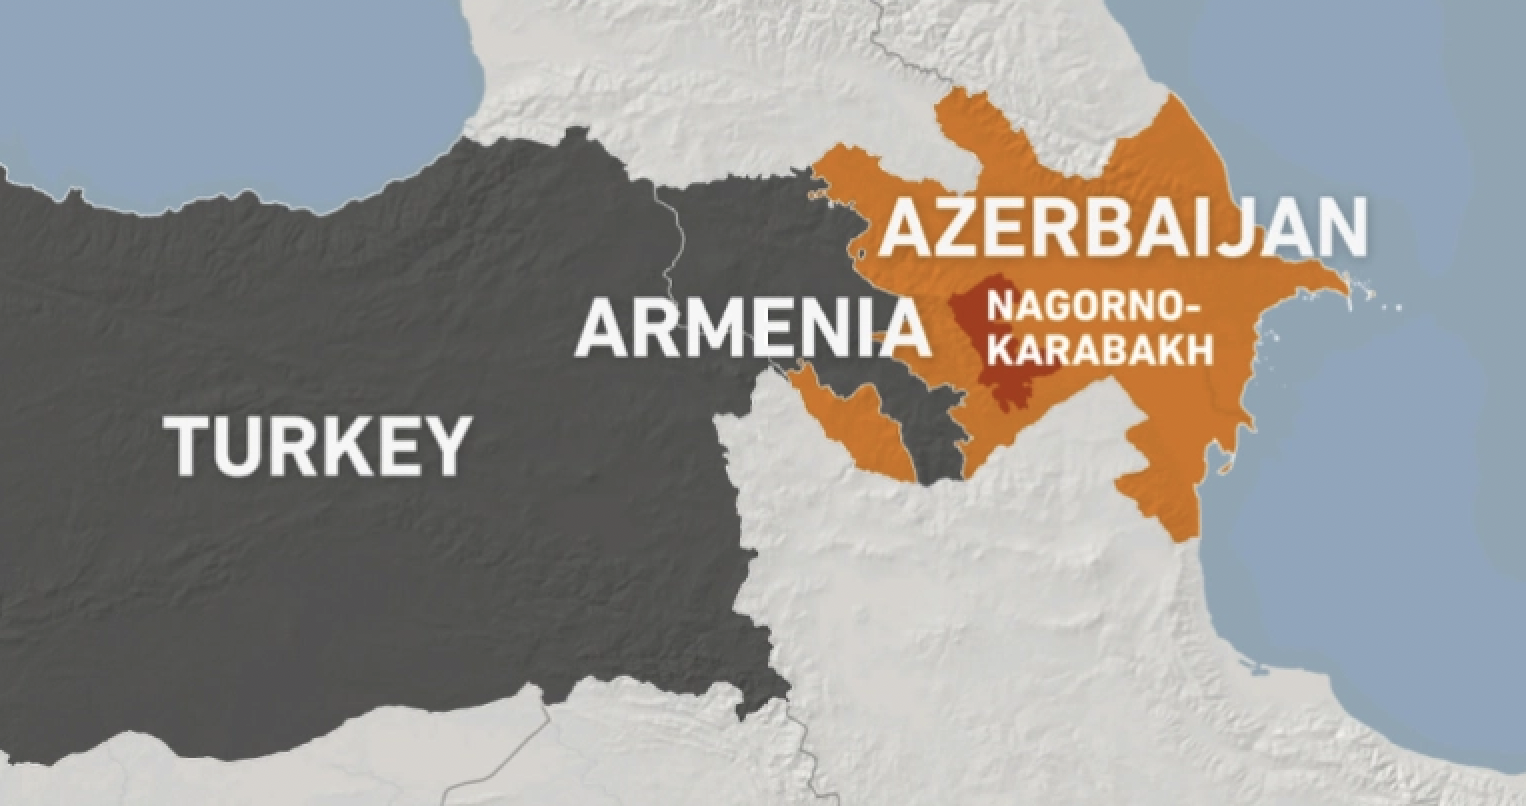 Η Αρμενία σταματά το εμπάργκο εισαγωγής τουρκικών προϊόντων από 1η Ιανουαρίου...